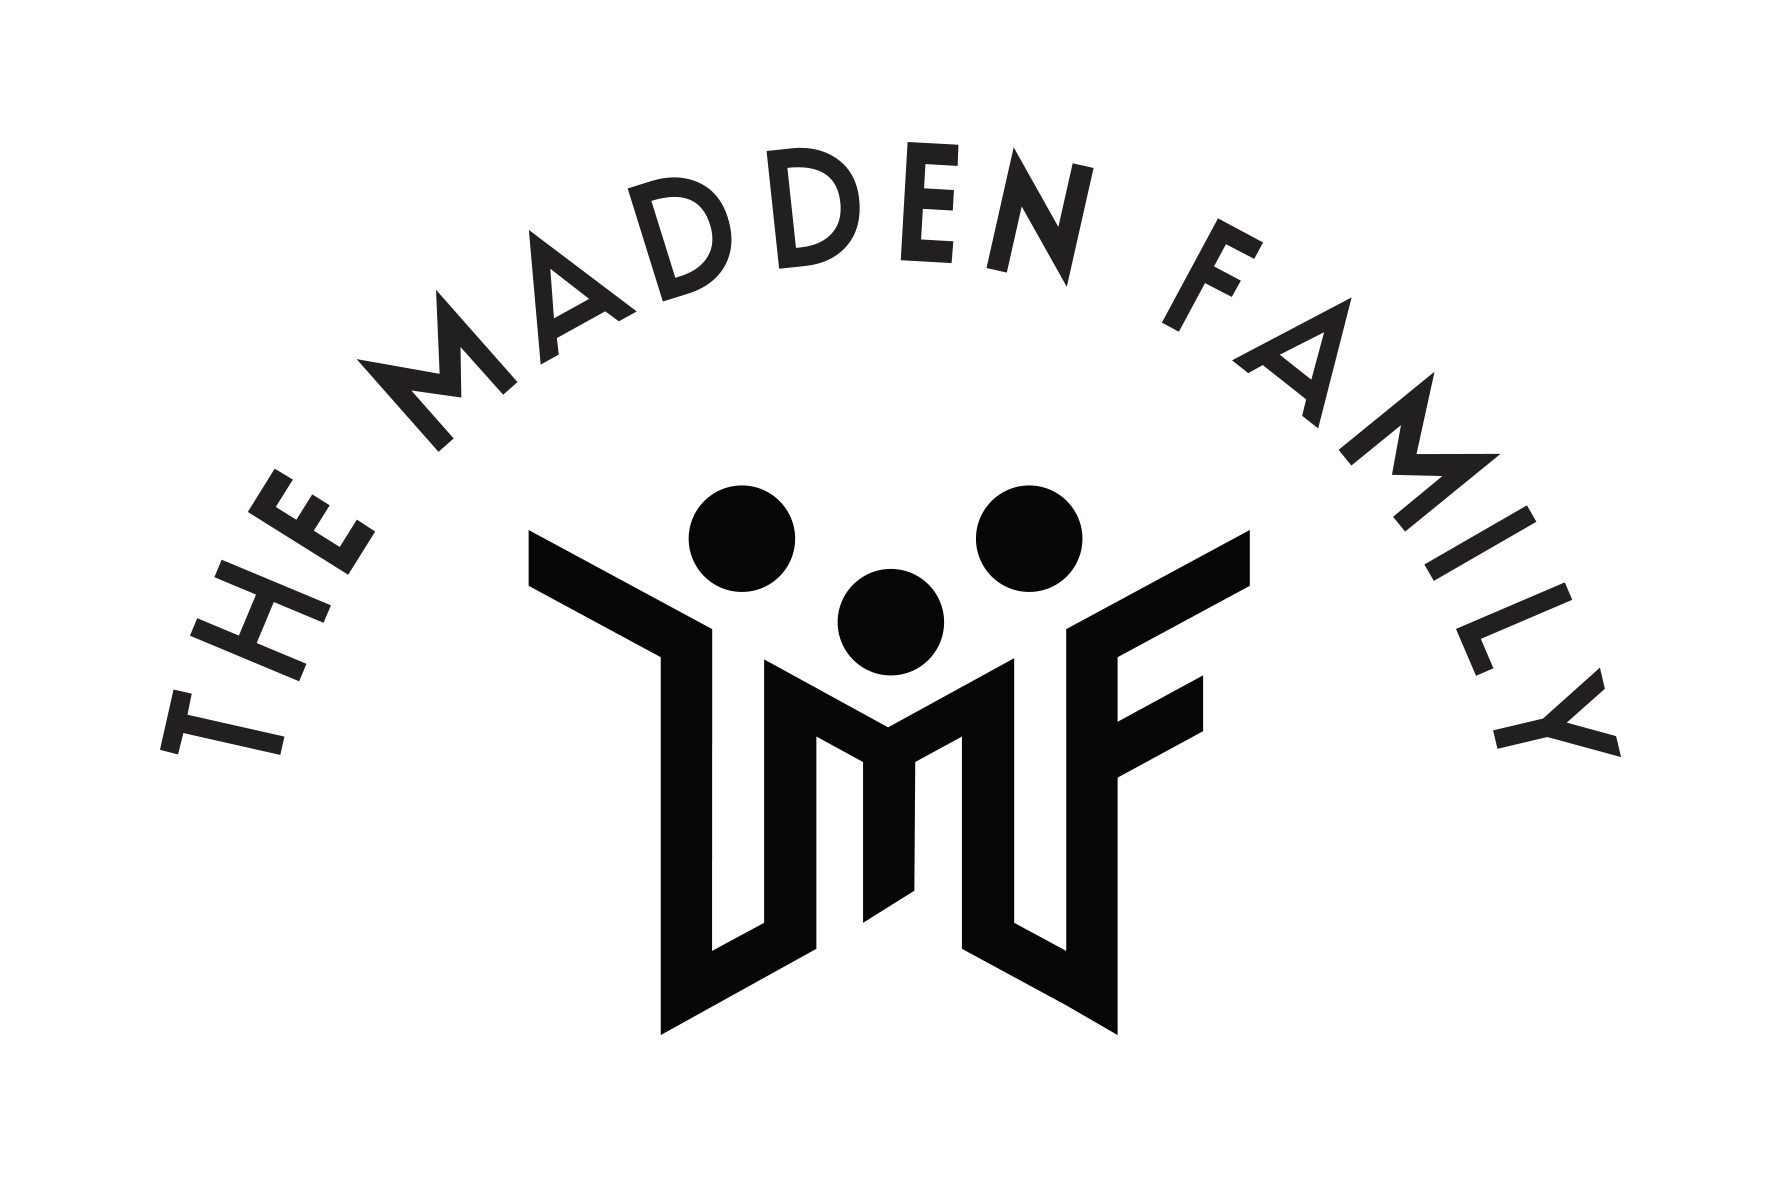 The Madden Family logo